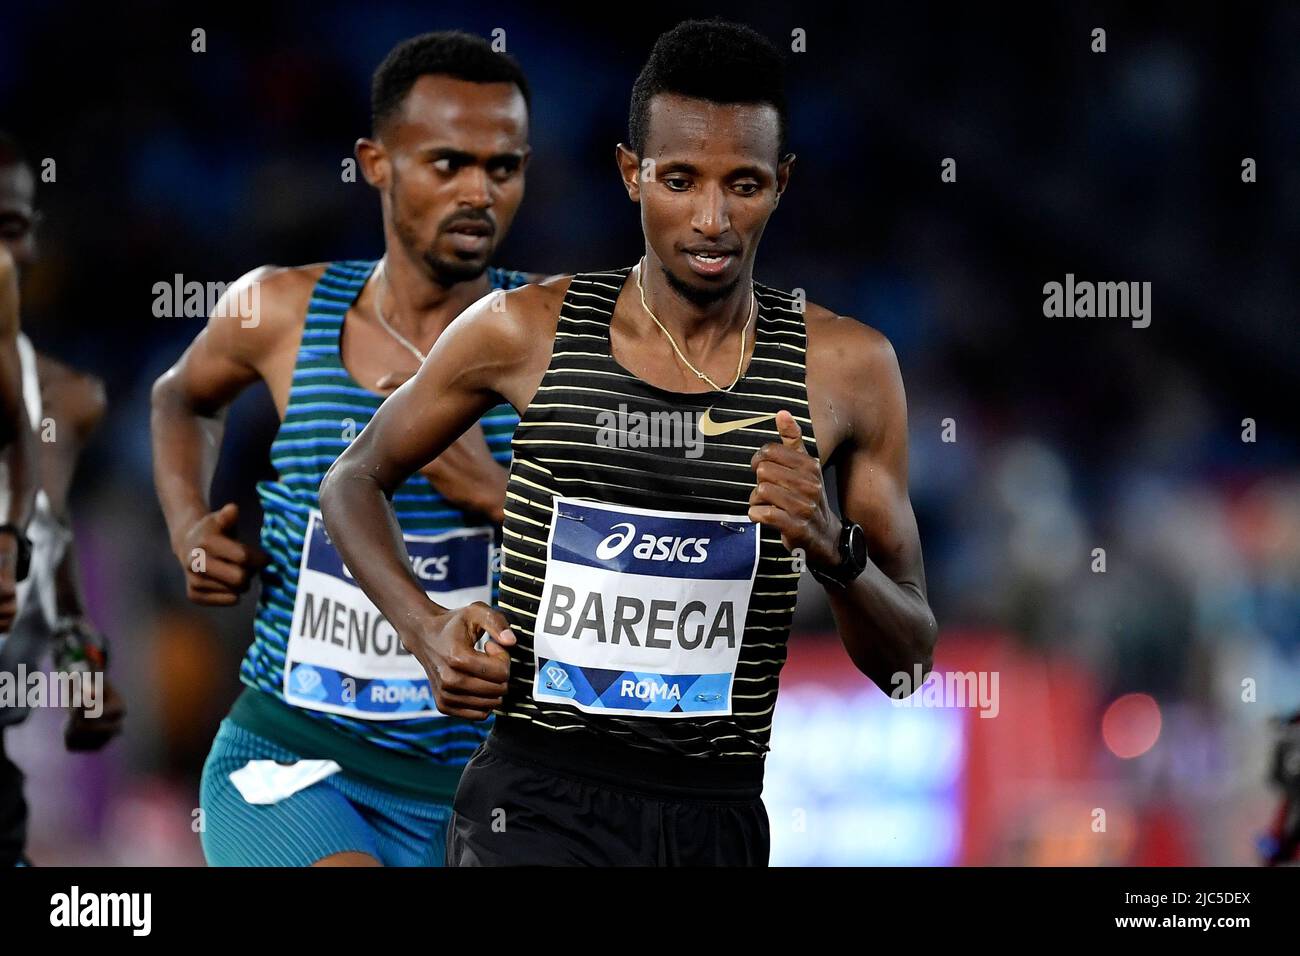 Selemon Barega d'Ethiopie est en compétition en 5000m lors du Gala d'or de la Ligue des diamants de l'IAAF au stade Olimpic de Rome (Italie), 9 juin 2022 Banque D'Images